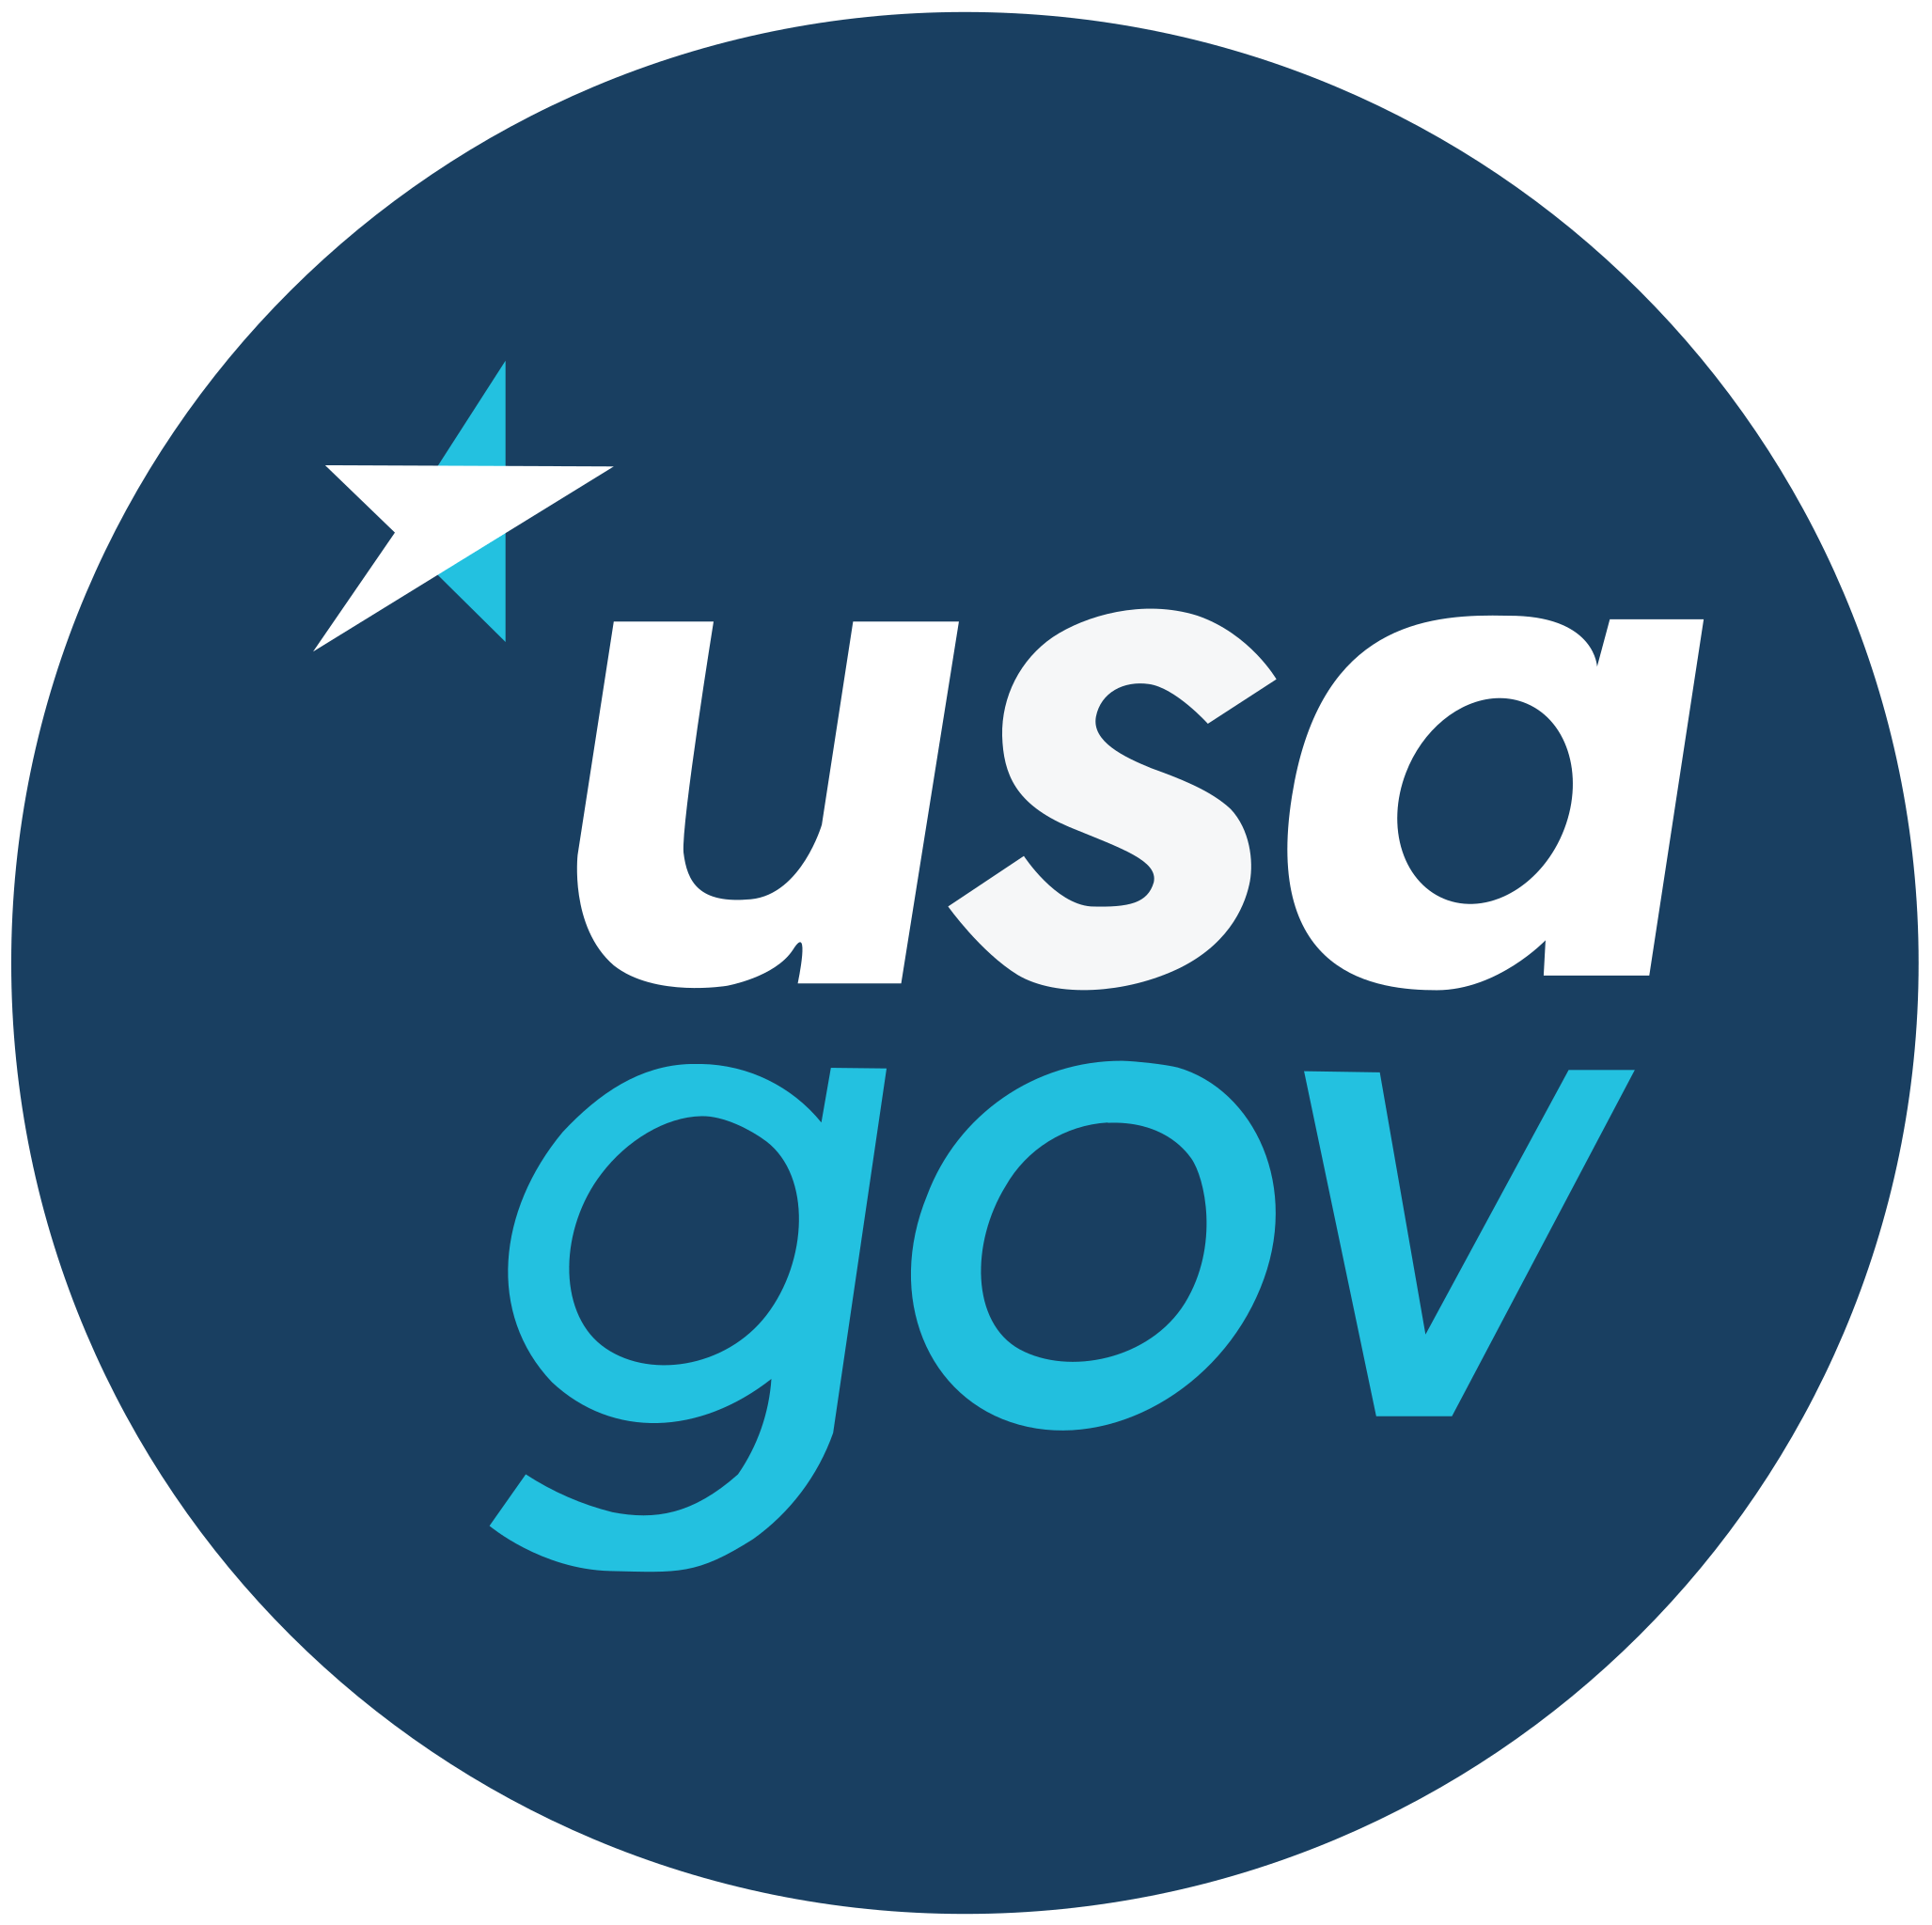 USA Gov logo.